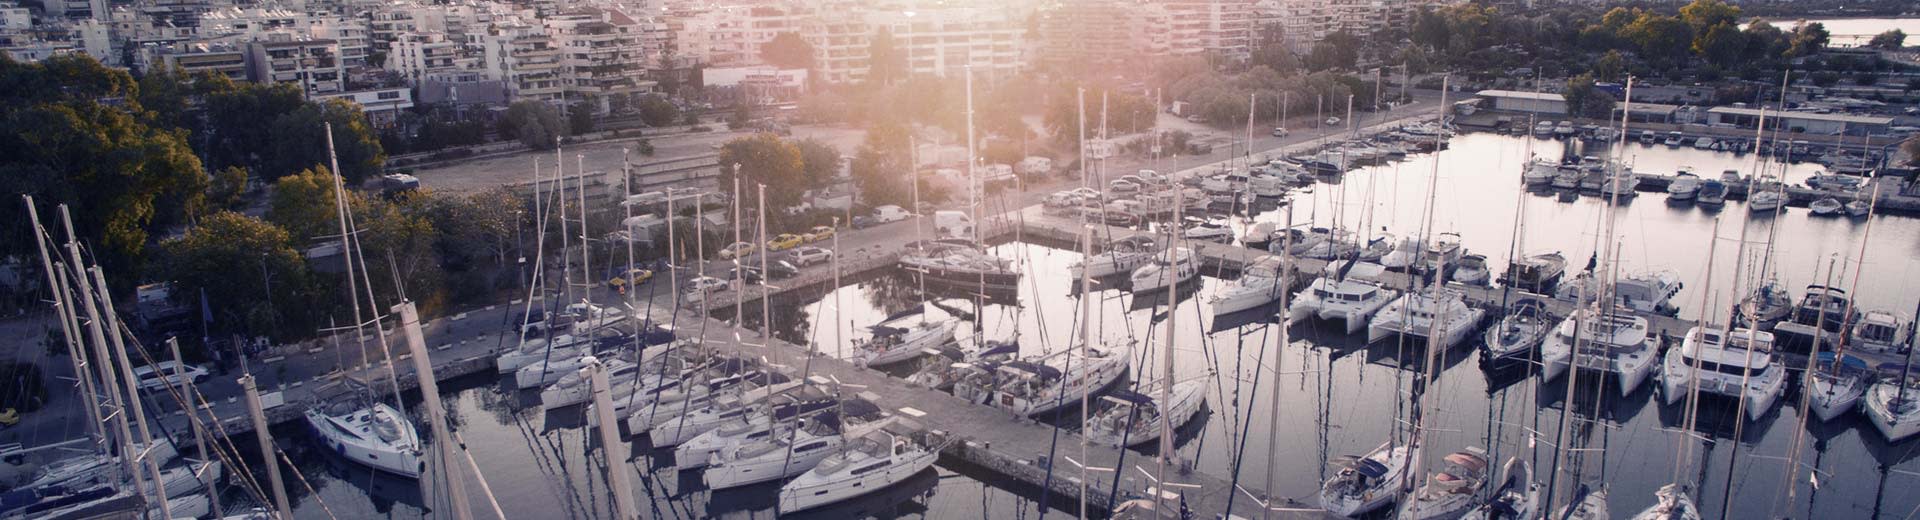 Sur un port de Pirée, un certain nombre de yachts privés attendent une journée chaude et claire.